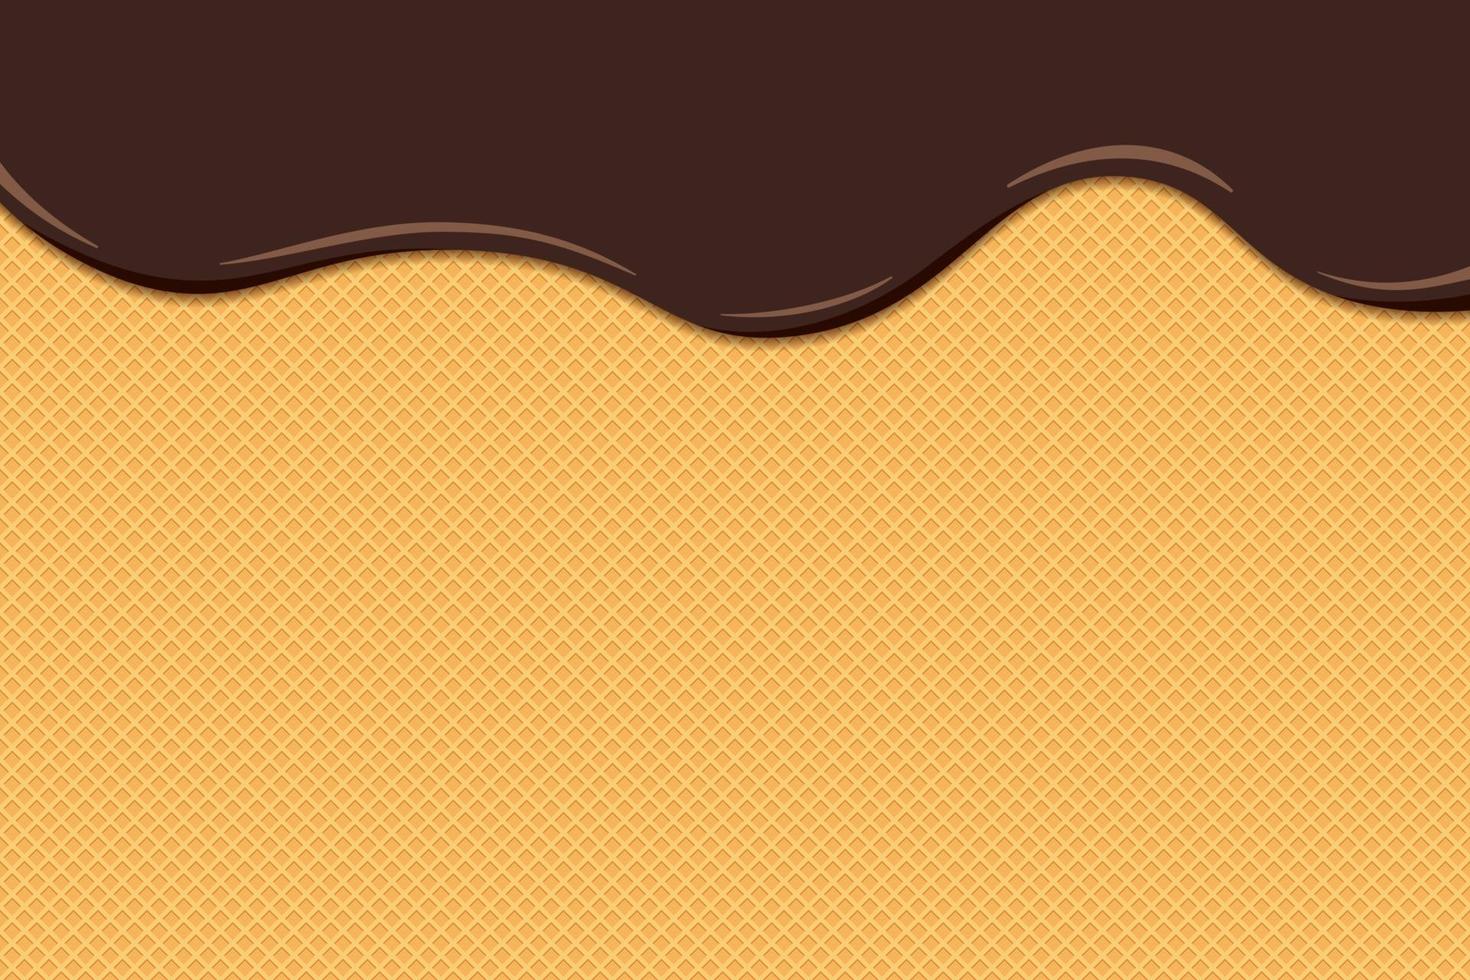 el helado de chocolate se derrite y fluye sobre la superficie tostada del gofre. Fondo de pastel dulce de textura de oblea esmaltada. ilustración vectorial eps plana vector